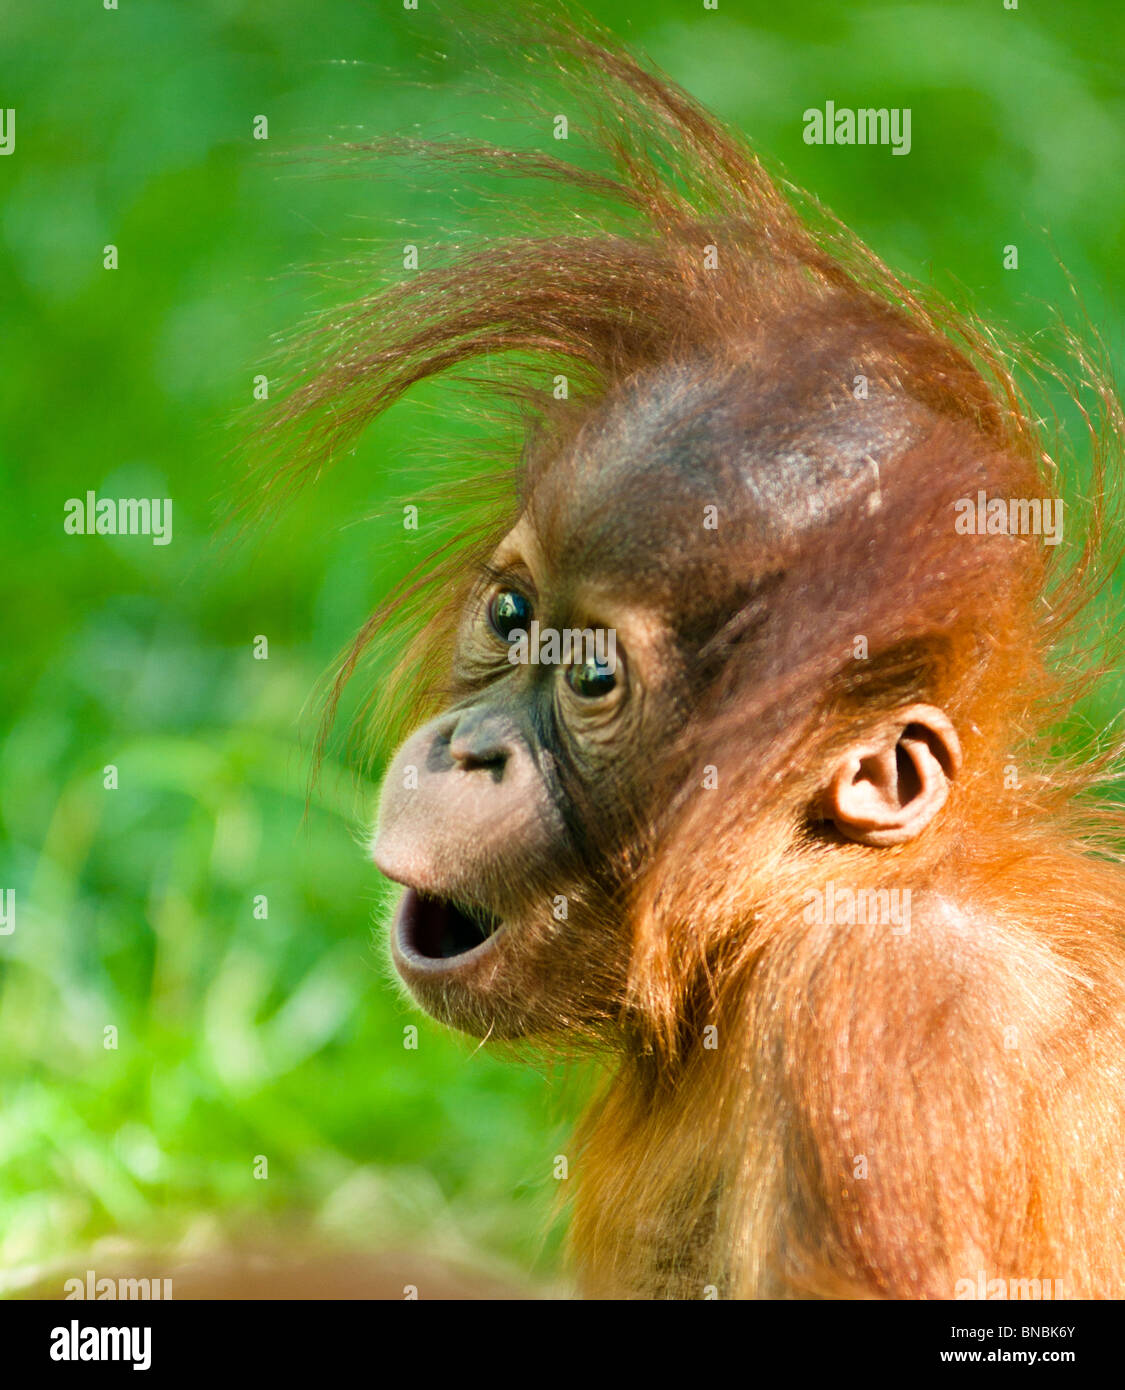 Orangután bebé mira con asombro Foto de stock